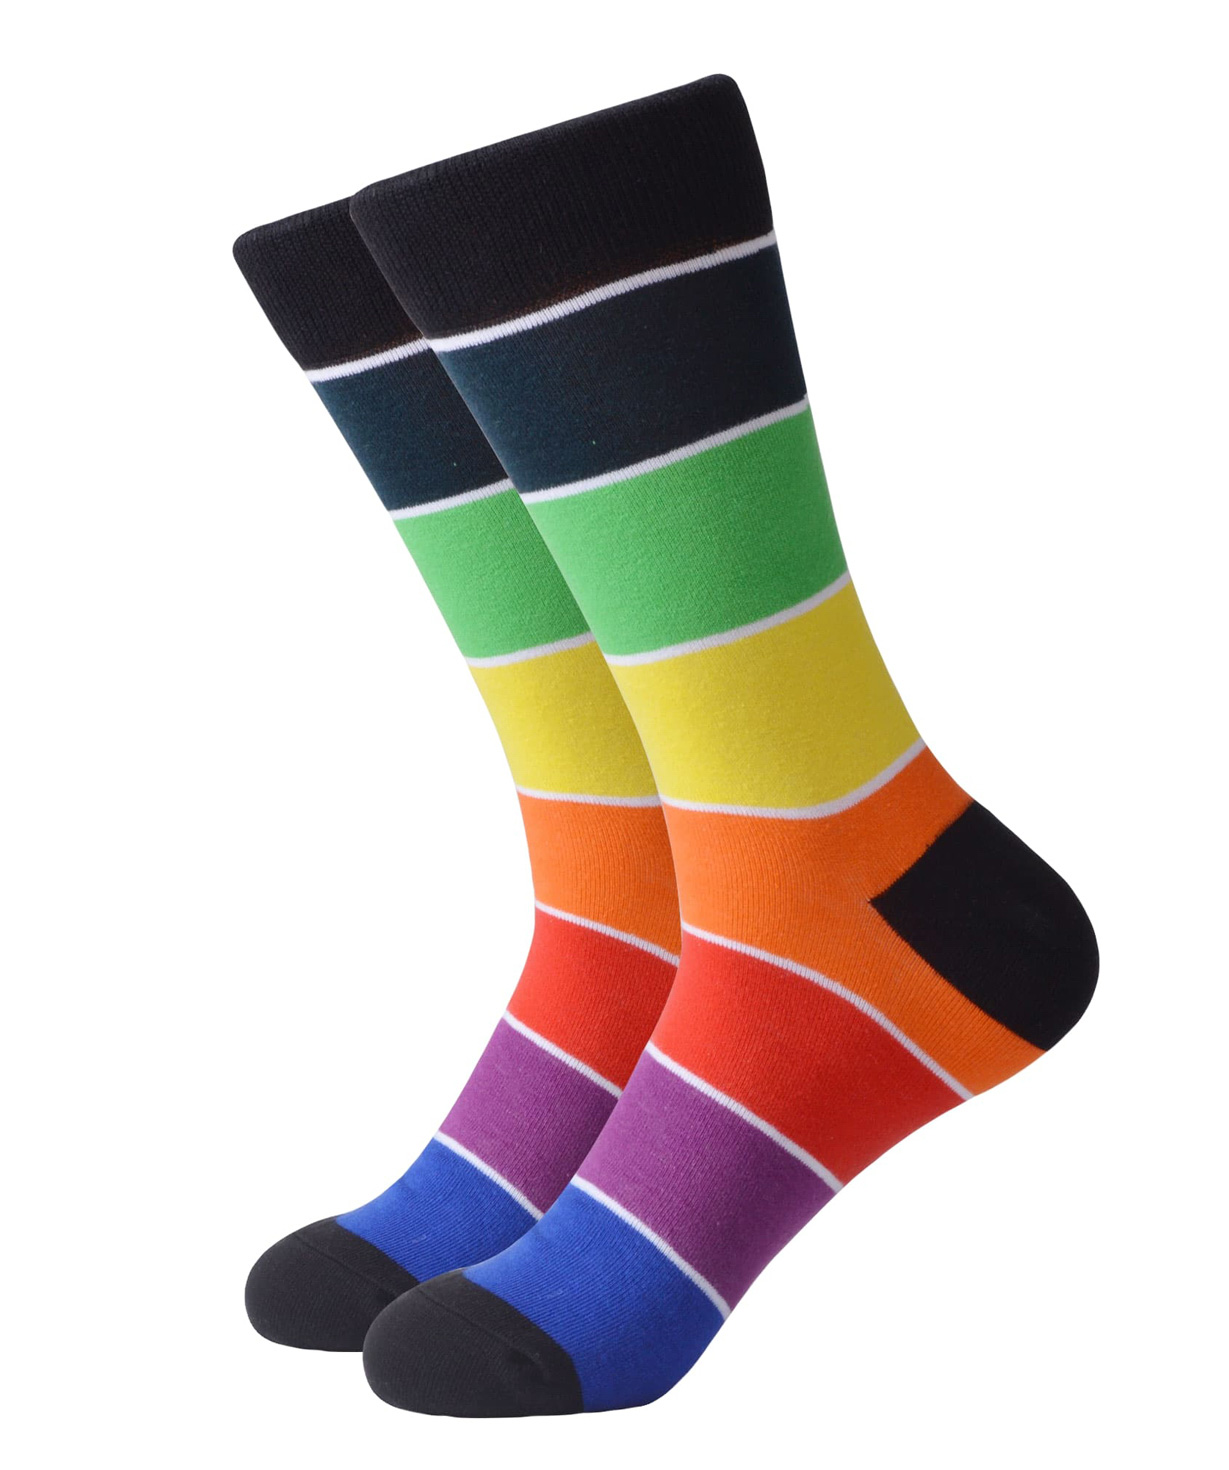 Գուլպաներ «Zeal Socks» գույներ №2